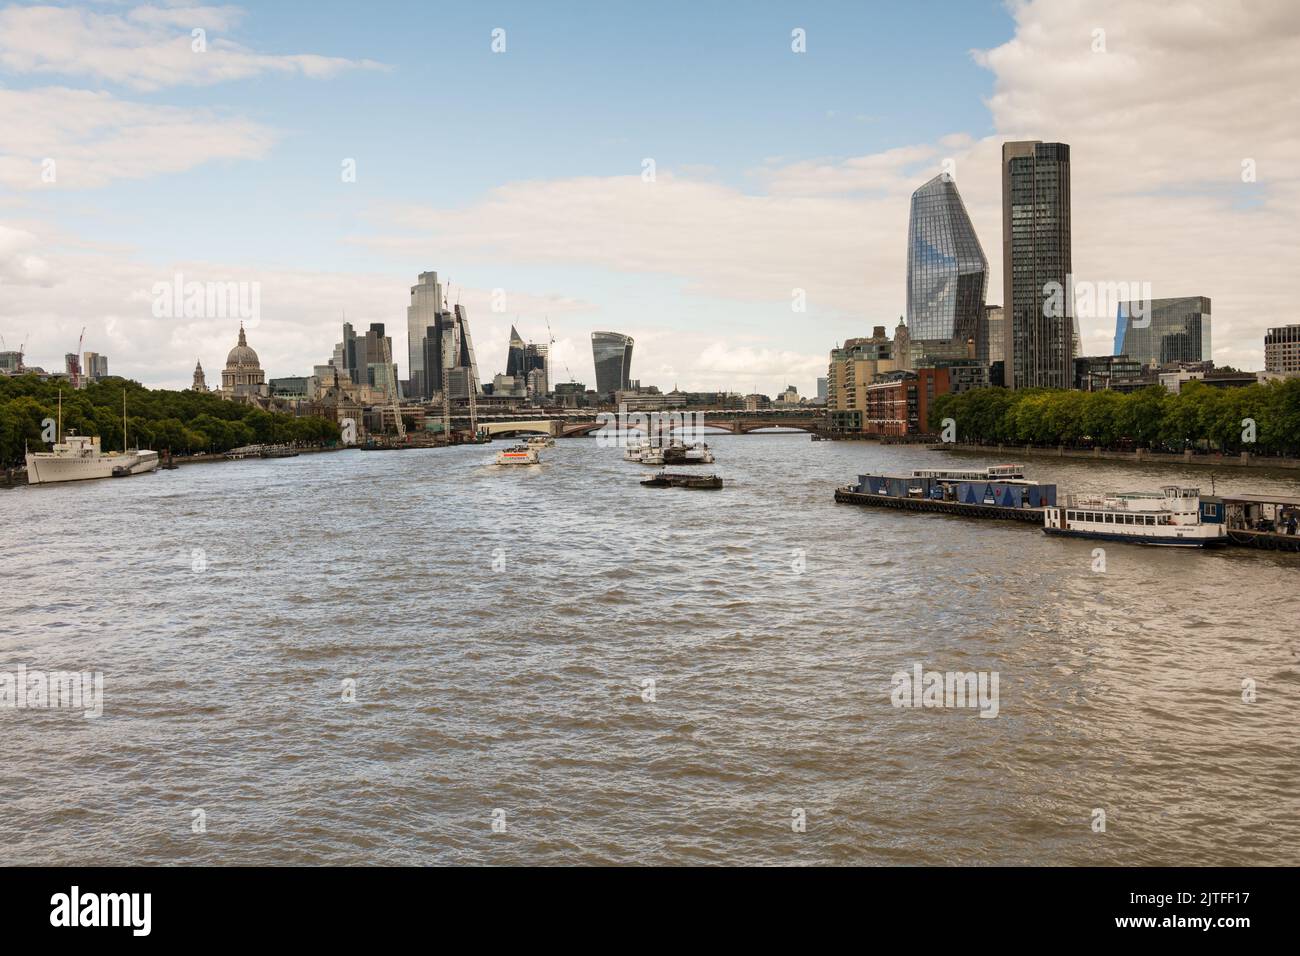 Vue sur la Tamise et les gratte-ciel de la ville de Londres depuis le pont de Waterloo, Londres, Angleterre, Royaume-Uni Banque D'Images